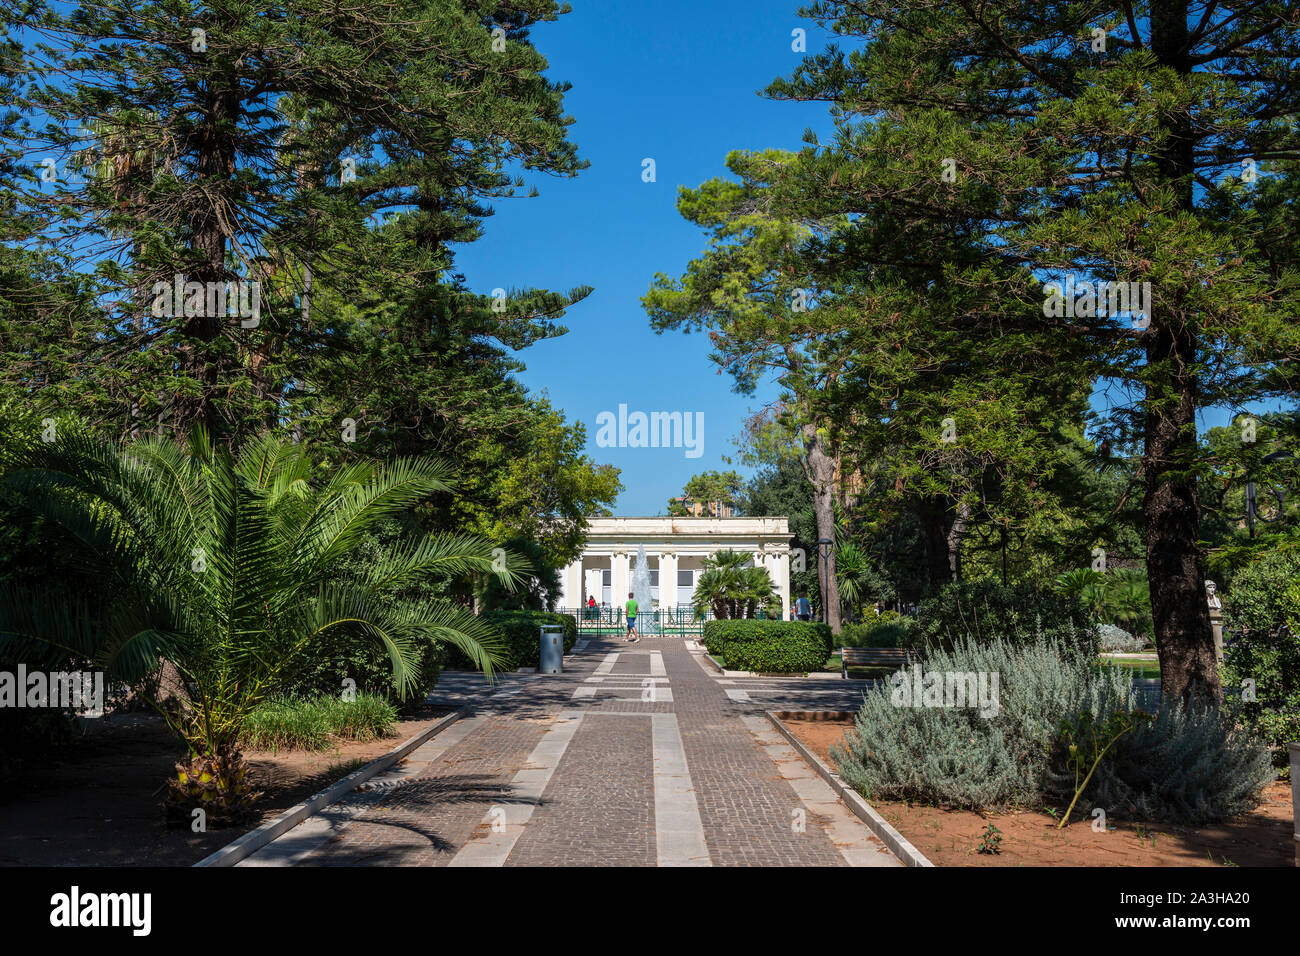 Villa Comunale public garden (Giardini Pubblici Giuseppe Garibaldi) in Lecce, Apulia (Puglia) in Southern Italy Stock Photo